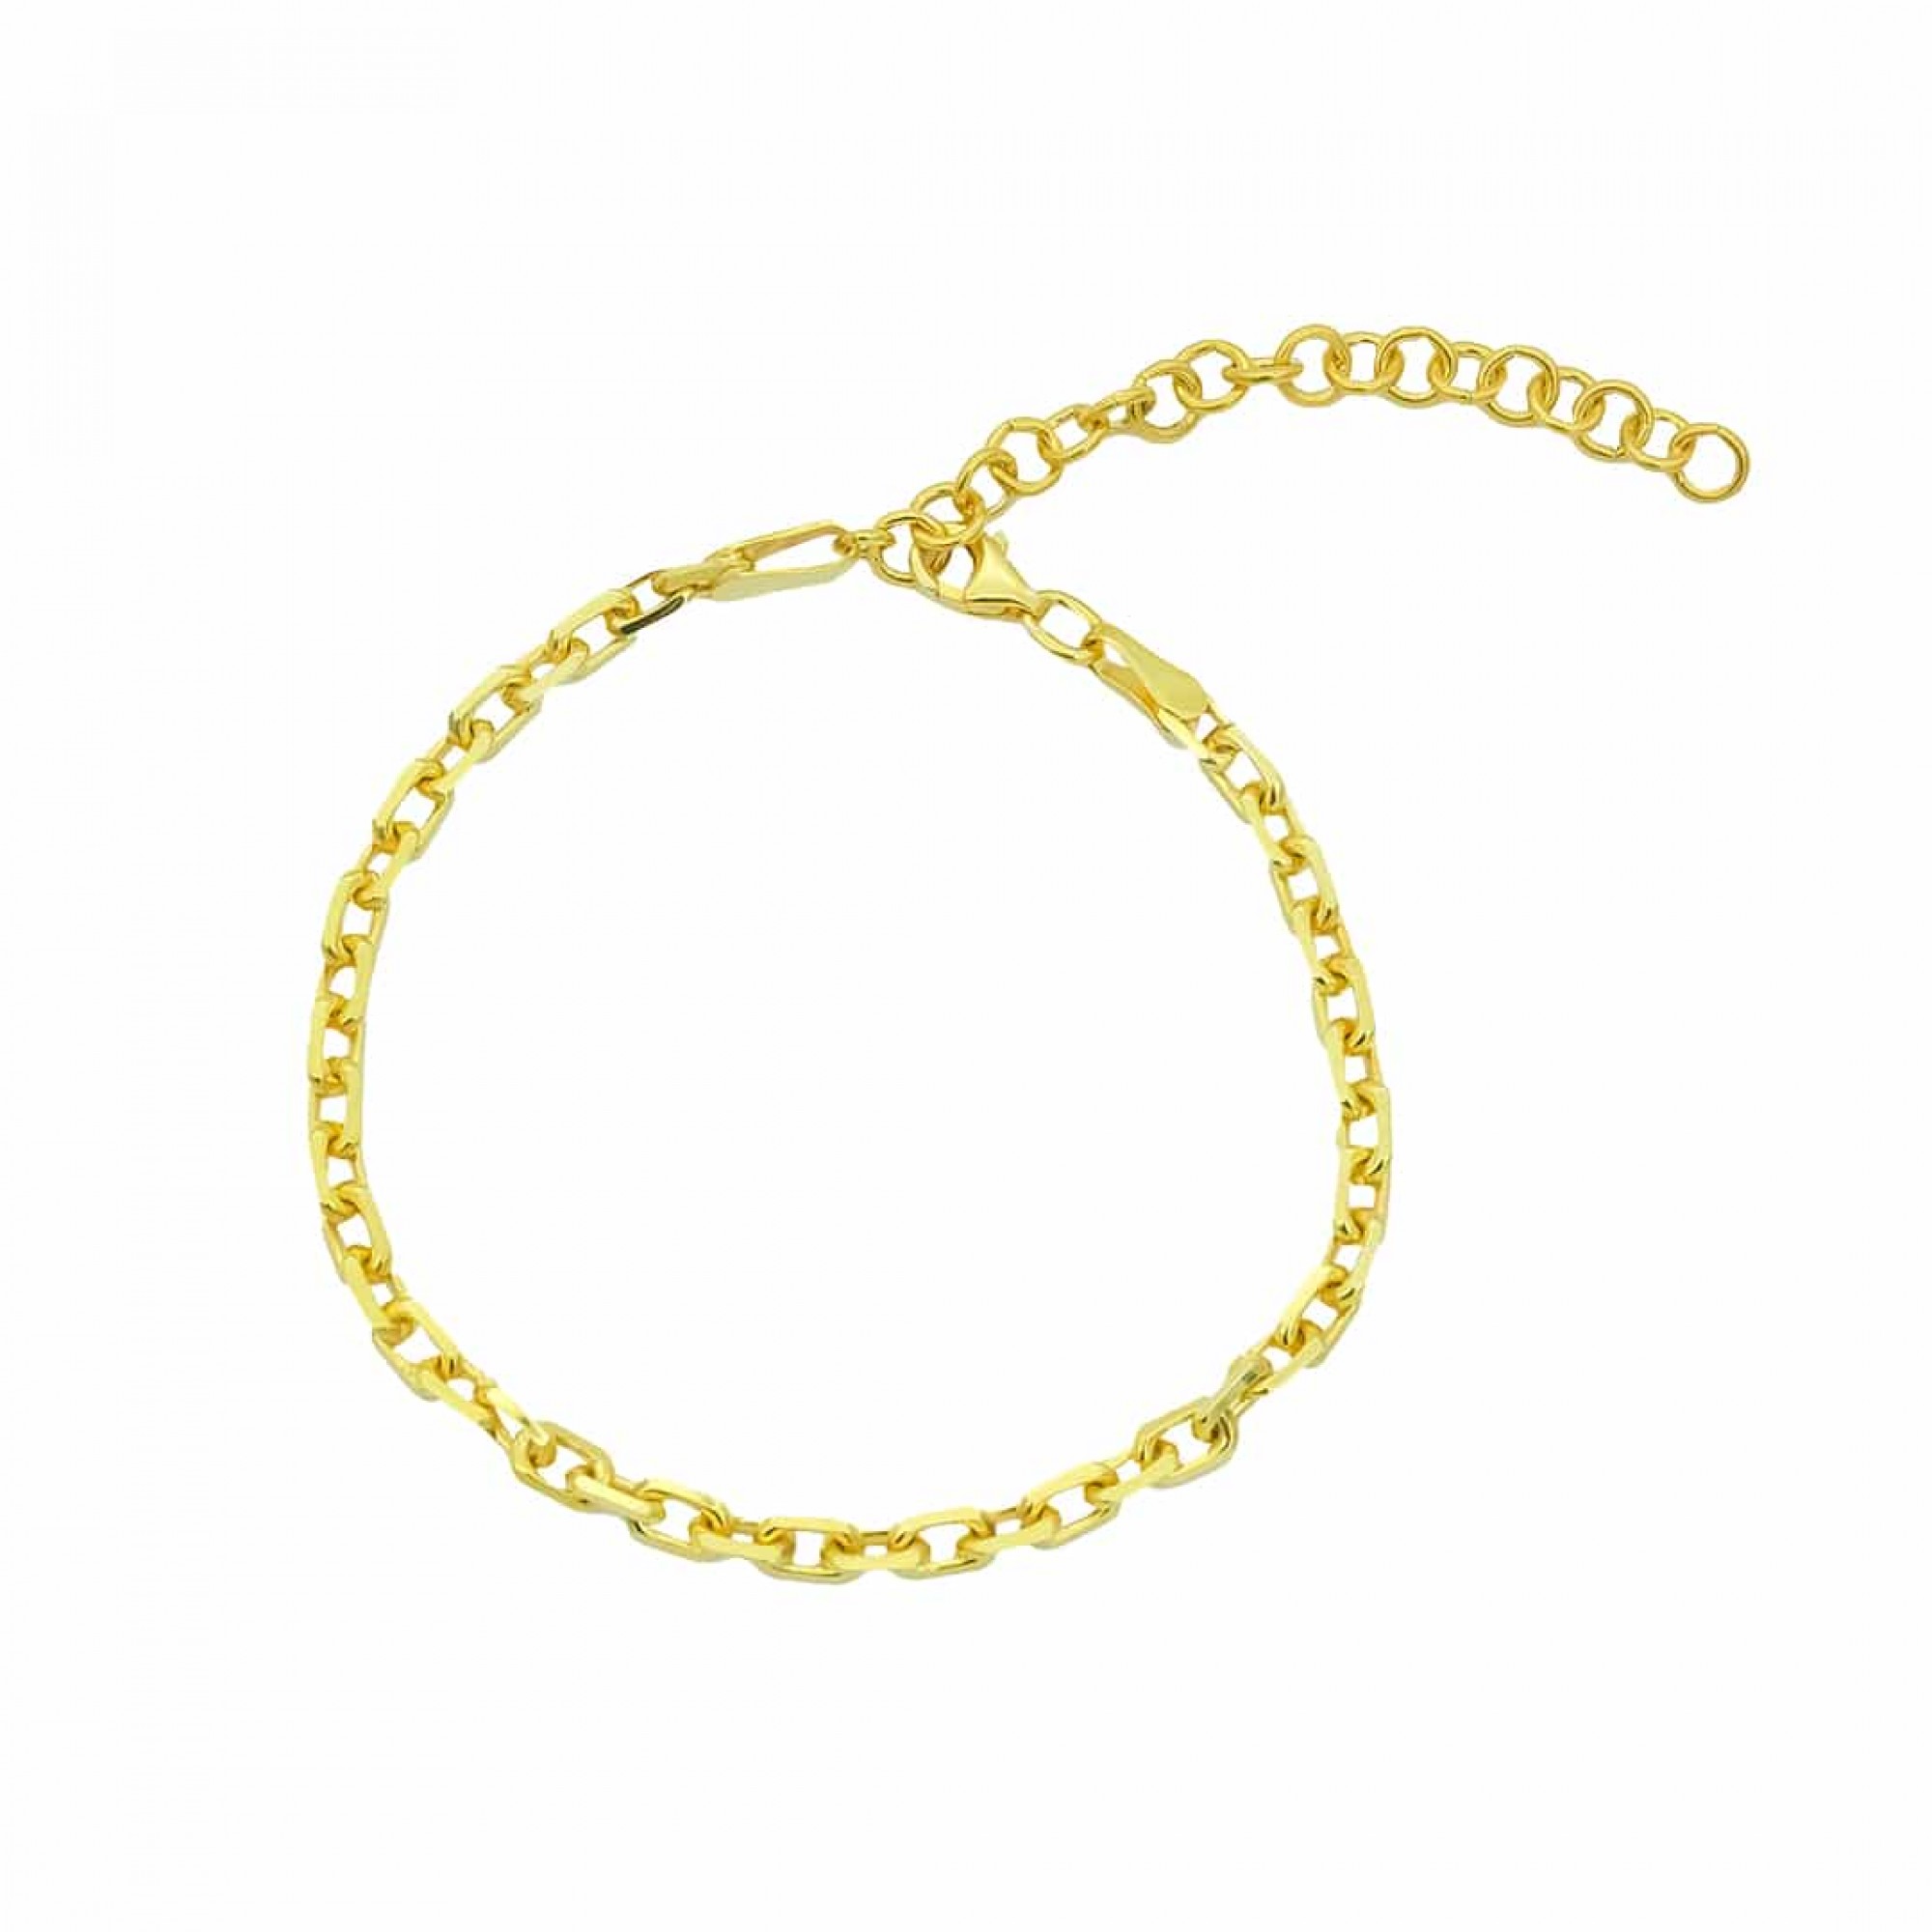 Armschmuck ideal FashionJuwelier Geschenk als Silber in Silber 925 - Gold Armkette/Armband oder